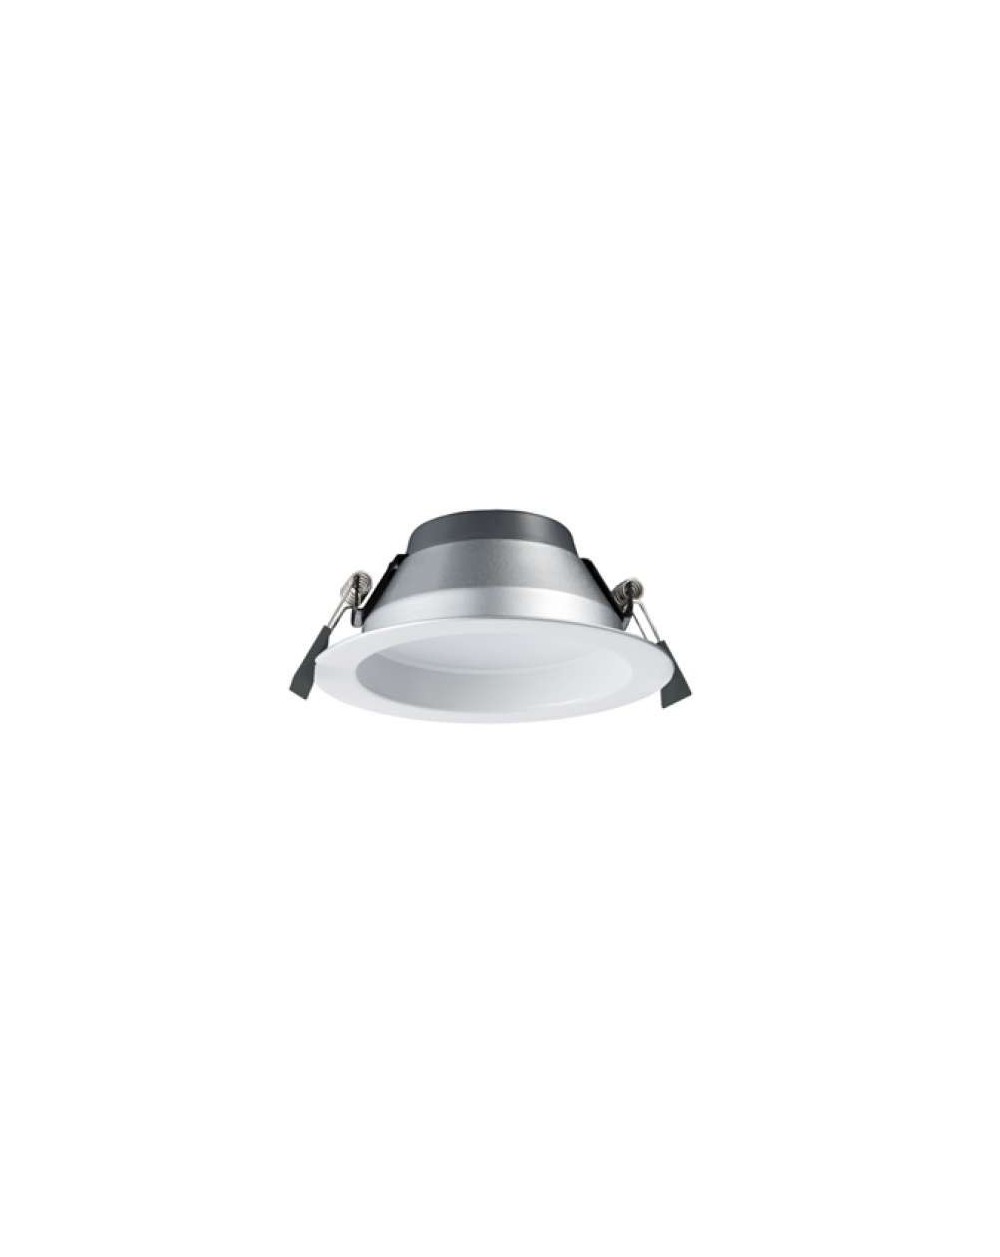 Lampa sufitowa ECOEYE 40W WP IP44 - Mistic Lighting oprawa wpuszczana okrągła typu downlight do zabudowy w sufitach biała   